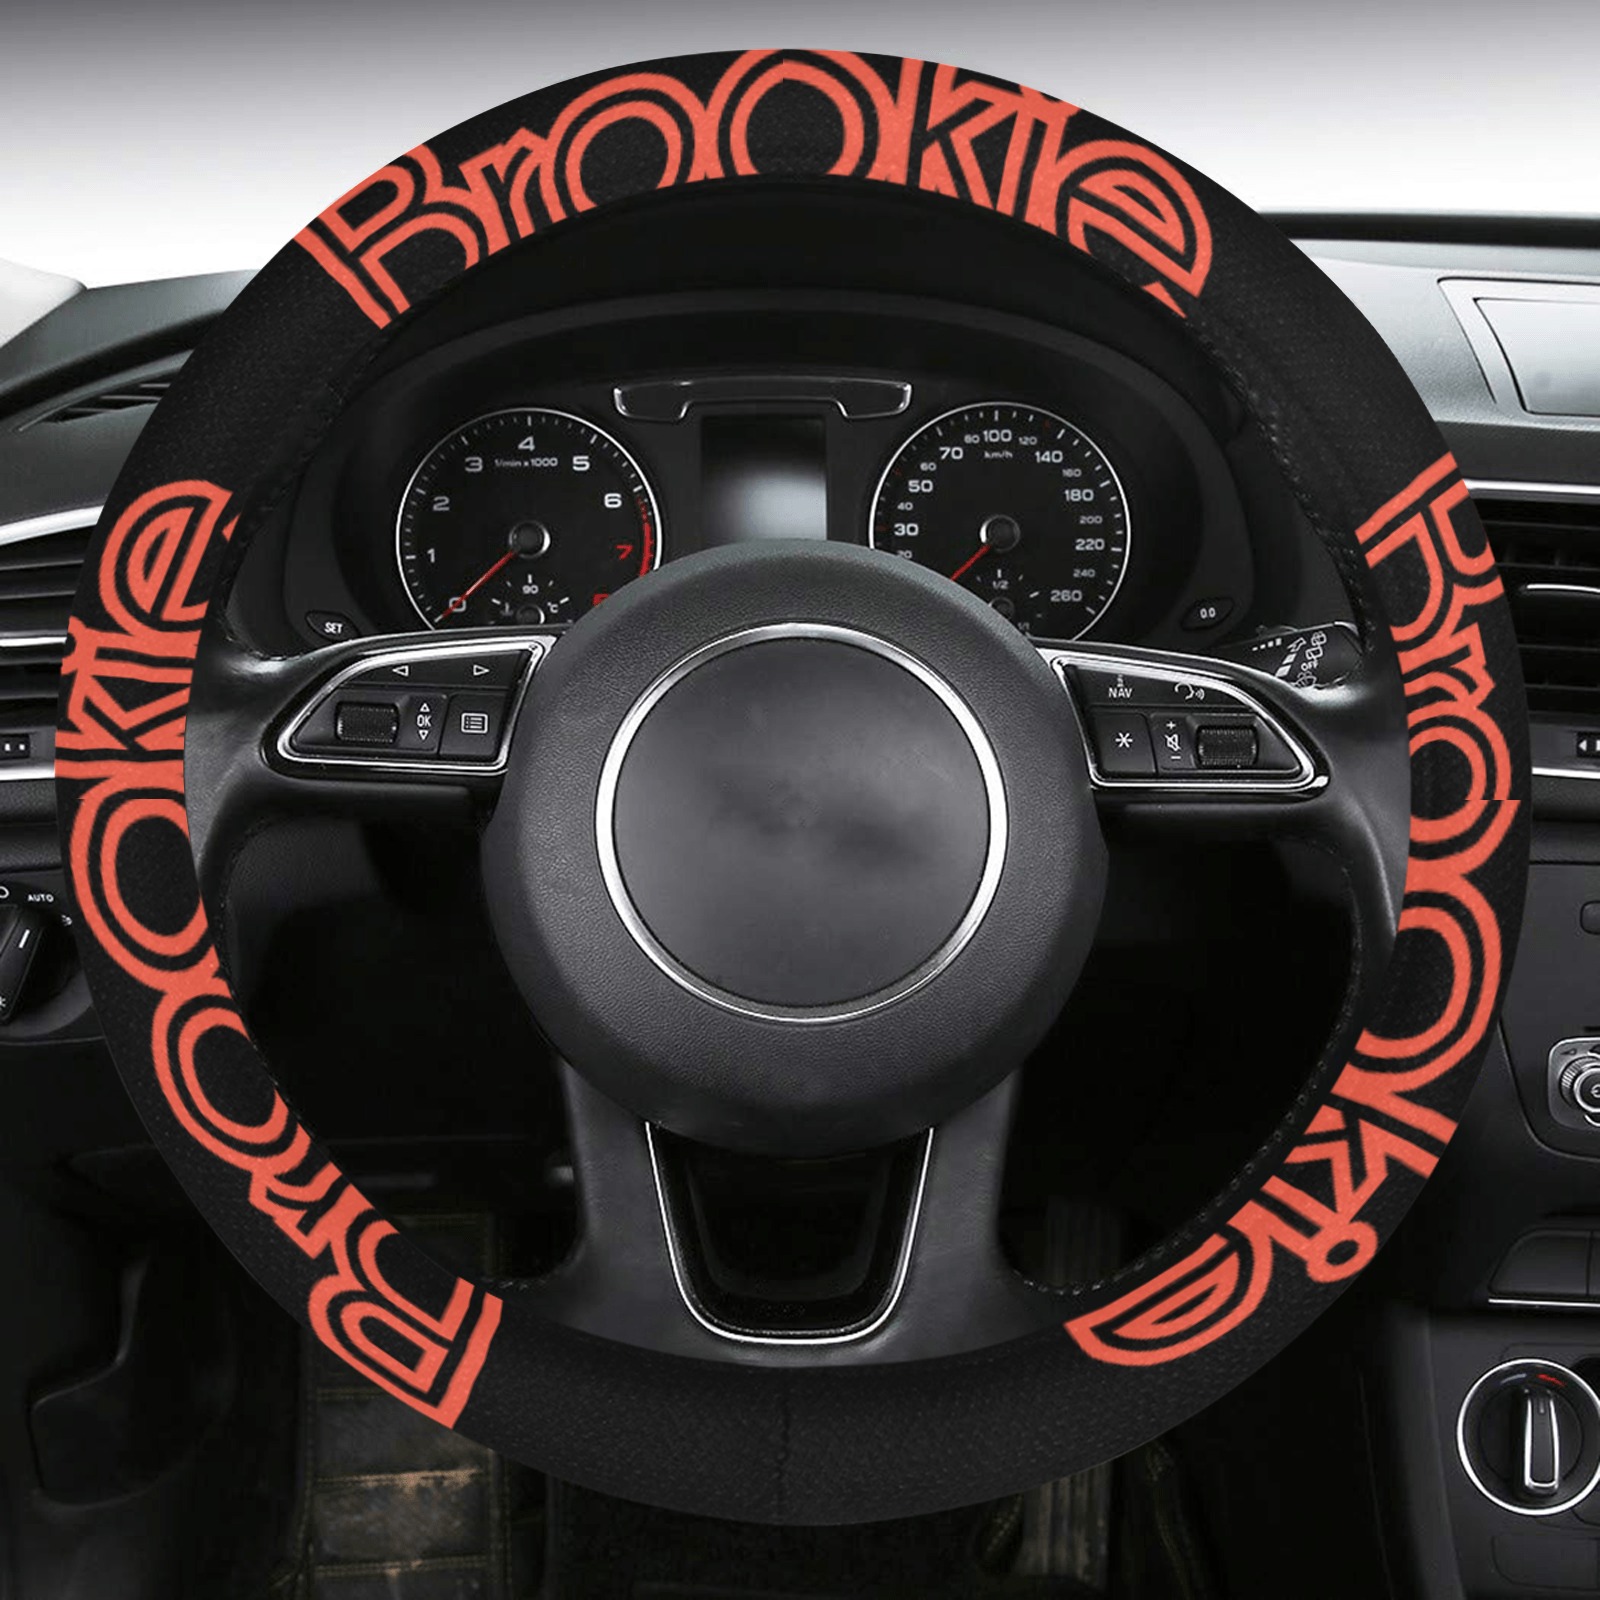 Brookie  steering wheel cover Steering Wheel Cover with Anti-Slip Insert